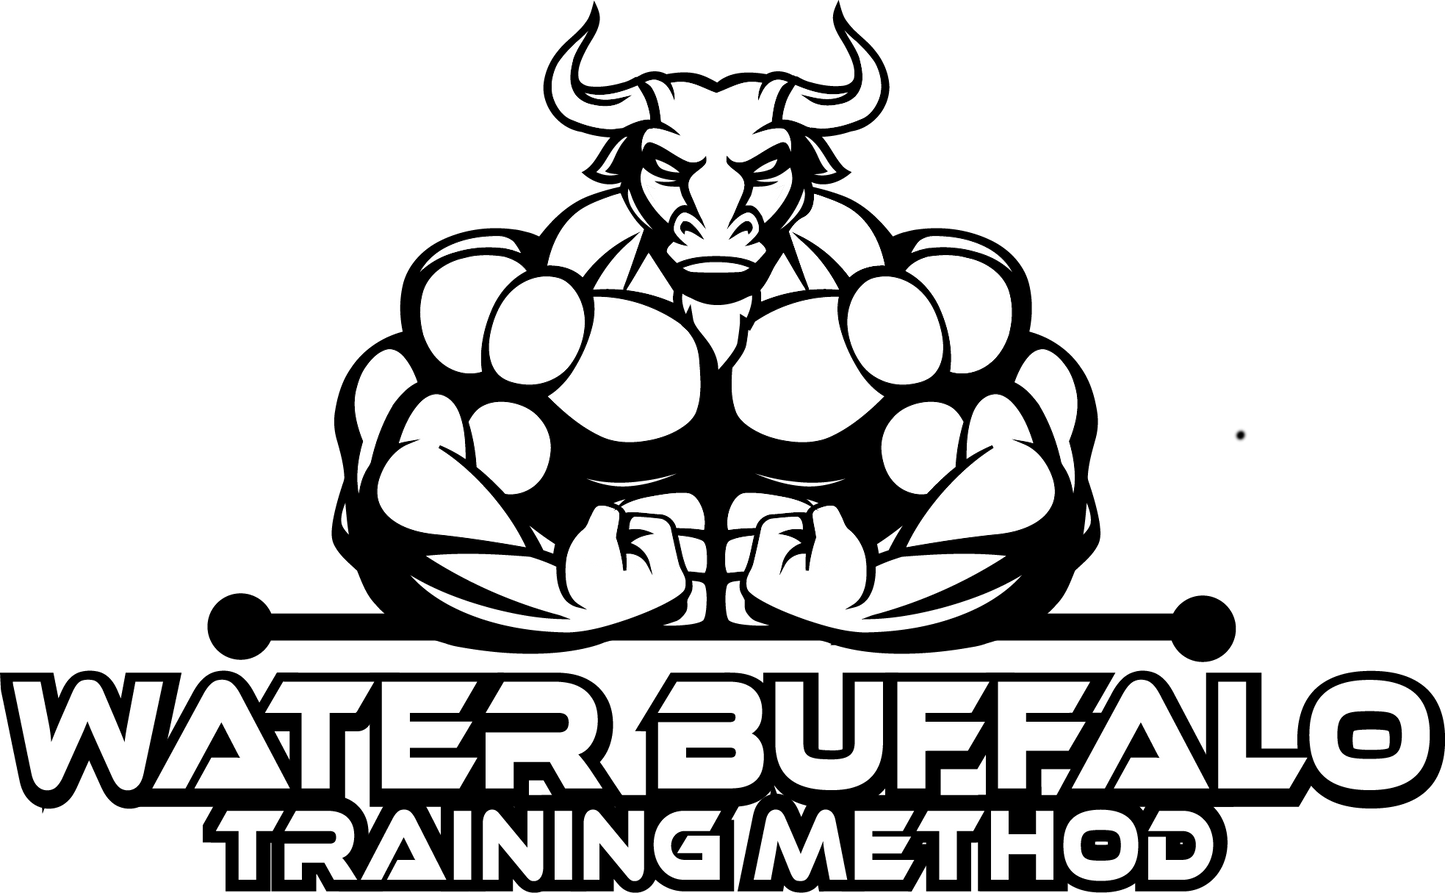 Phase 1 | Water Buffalo Training Method: